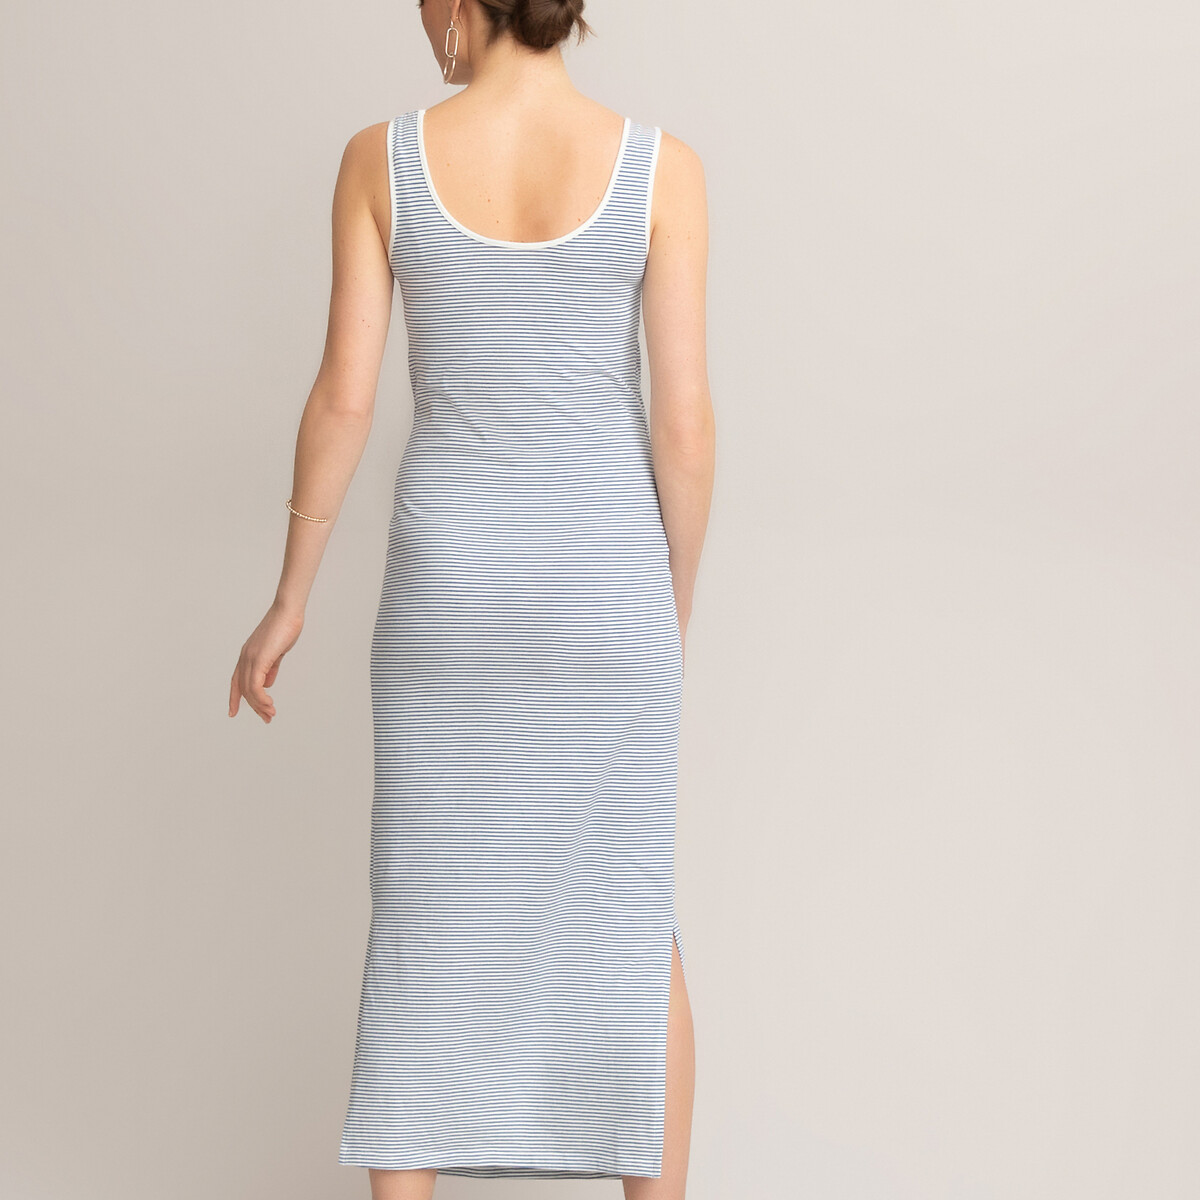 Платье-миди LaRedoute Для периода беременности без рукавов S синий, размер S - фото 4